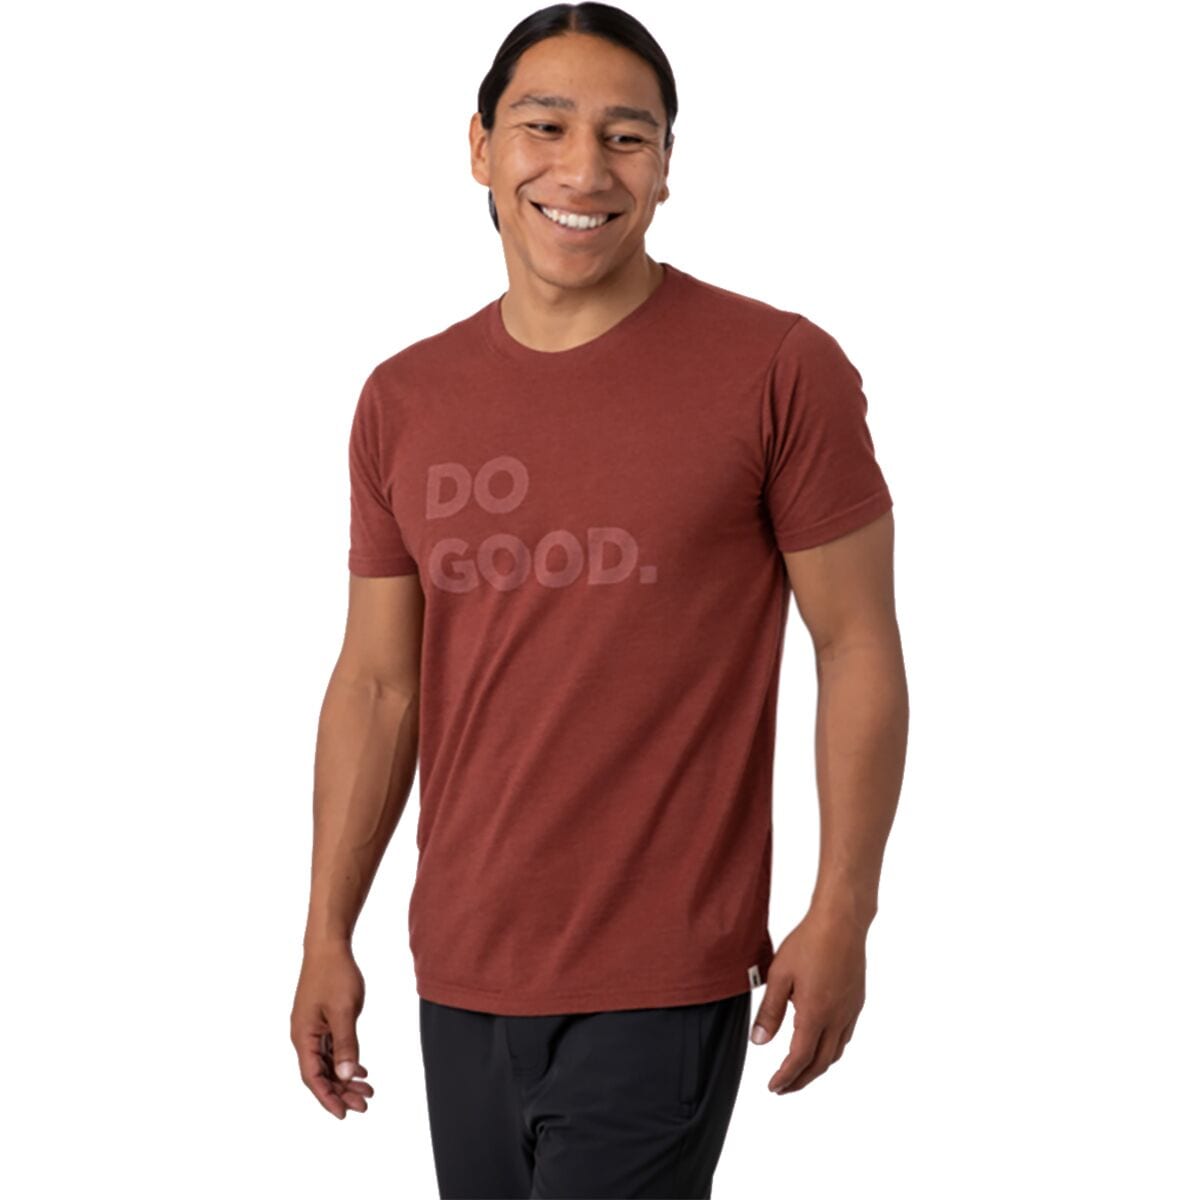 Do Good T-Shirt - Men